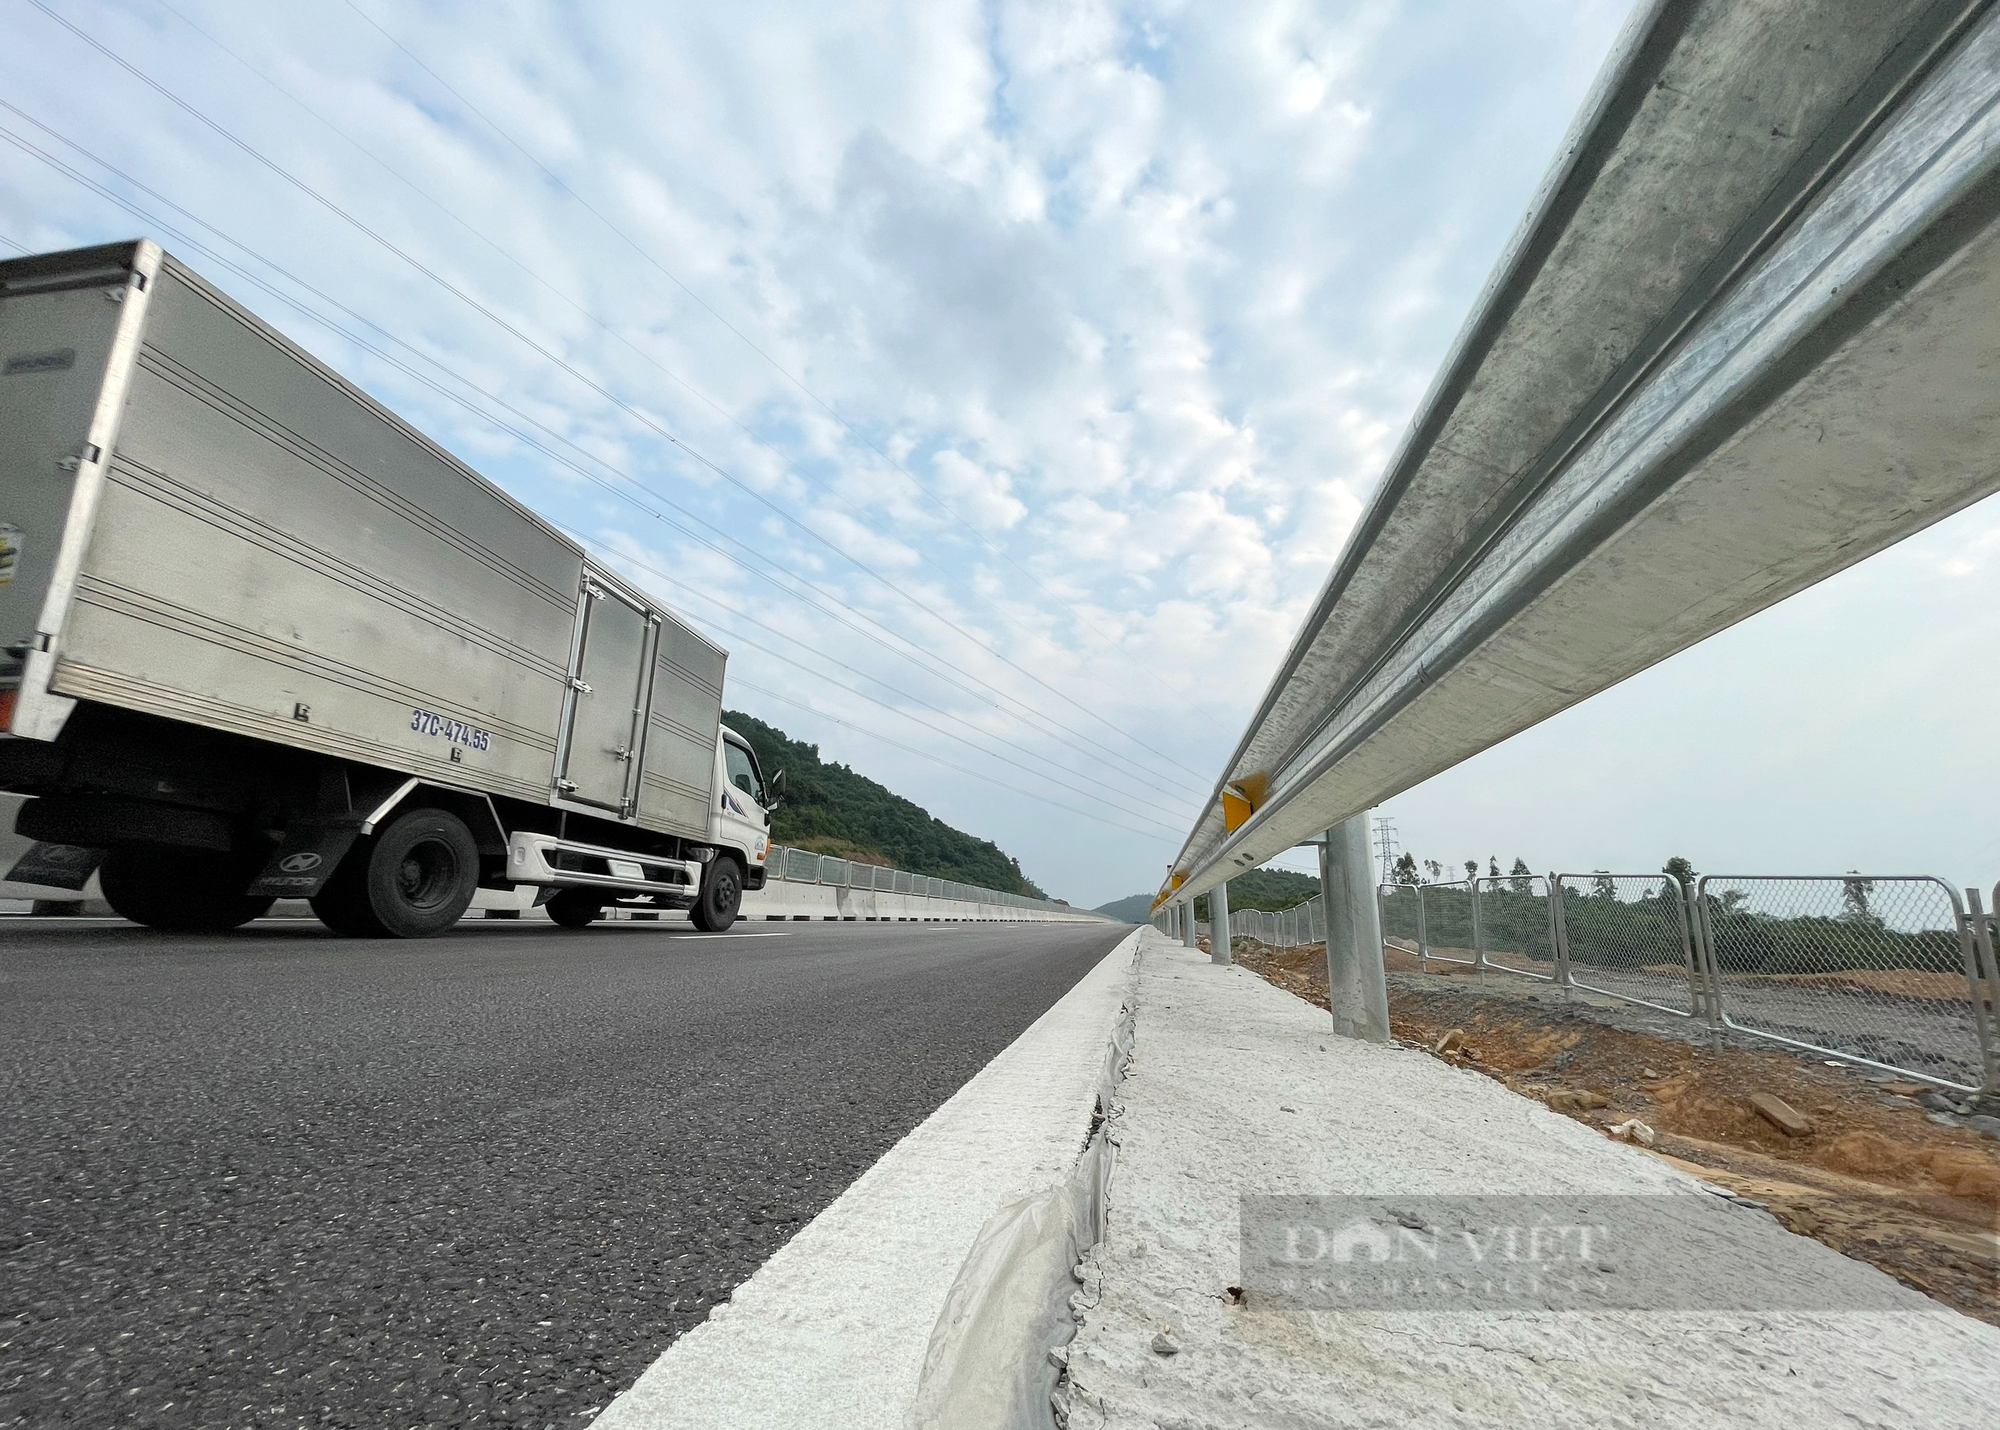 Cao tốc Bắc Nam đoạn Quốc lộ 45 Nghi Sơn, Nghi Sơn - Diễn Châu sau hơn 1 tháng đi vào hoạt động - Ảnh 11.